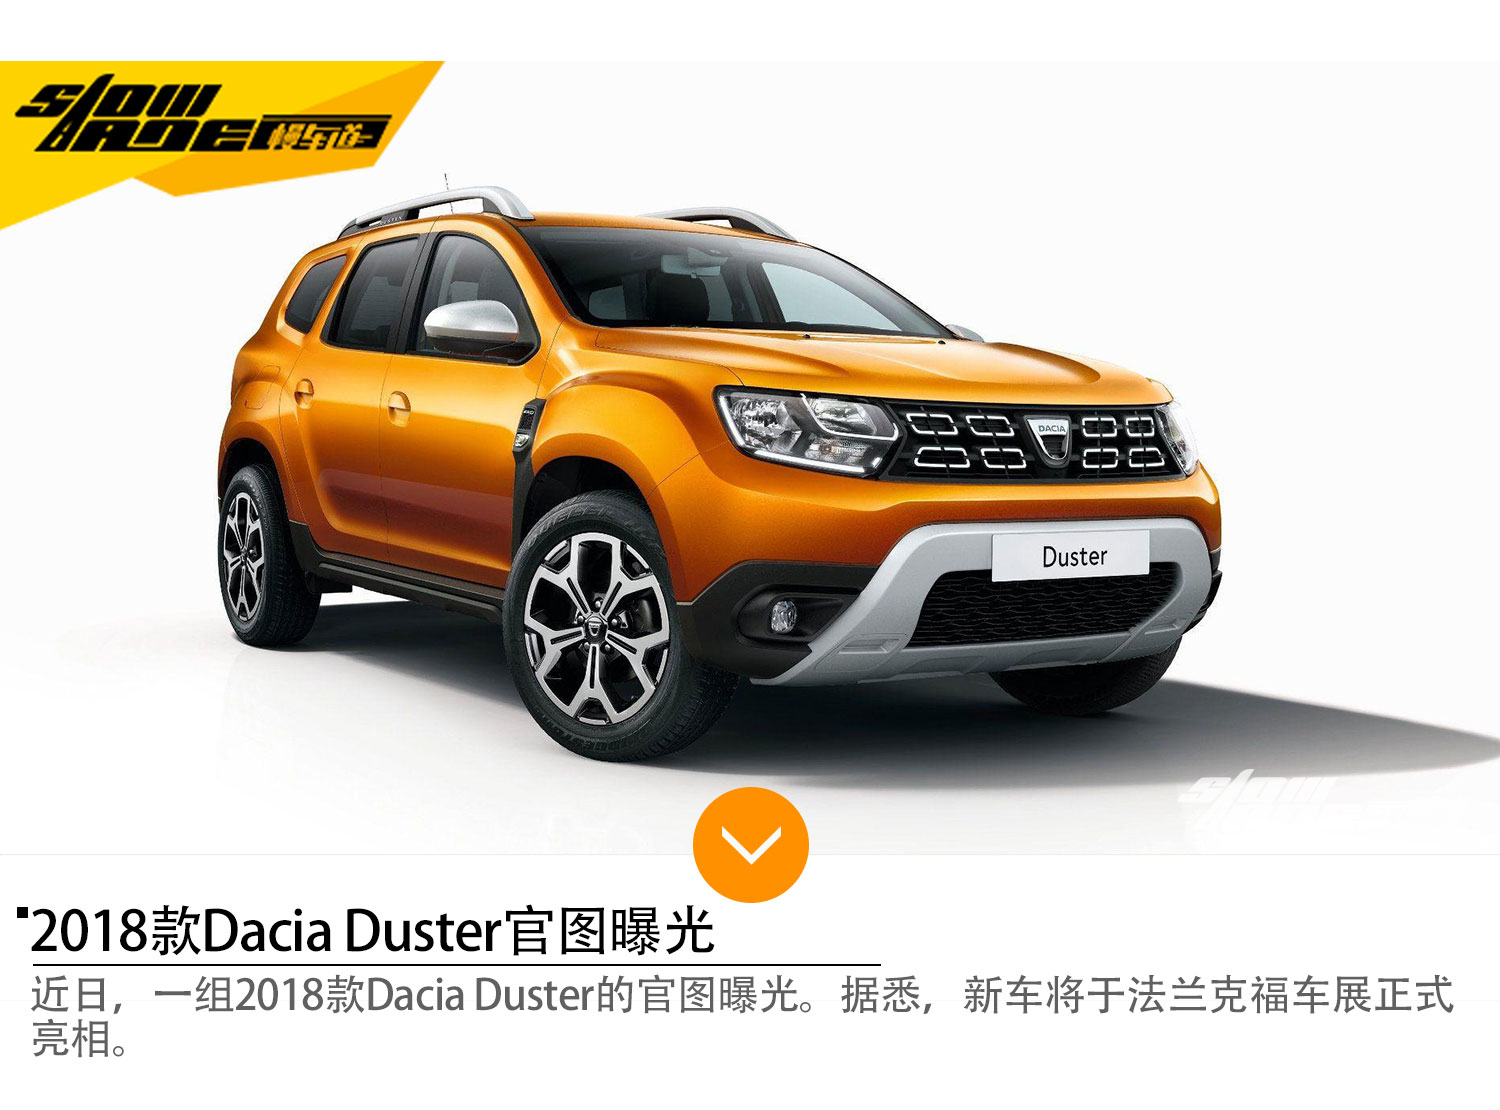 2018款Dacia Duster官图 法兰克福车展亮相